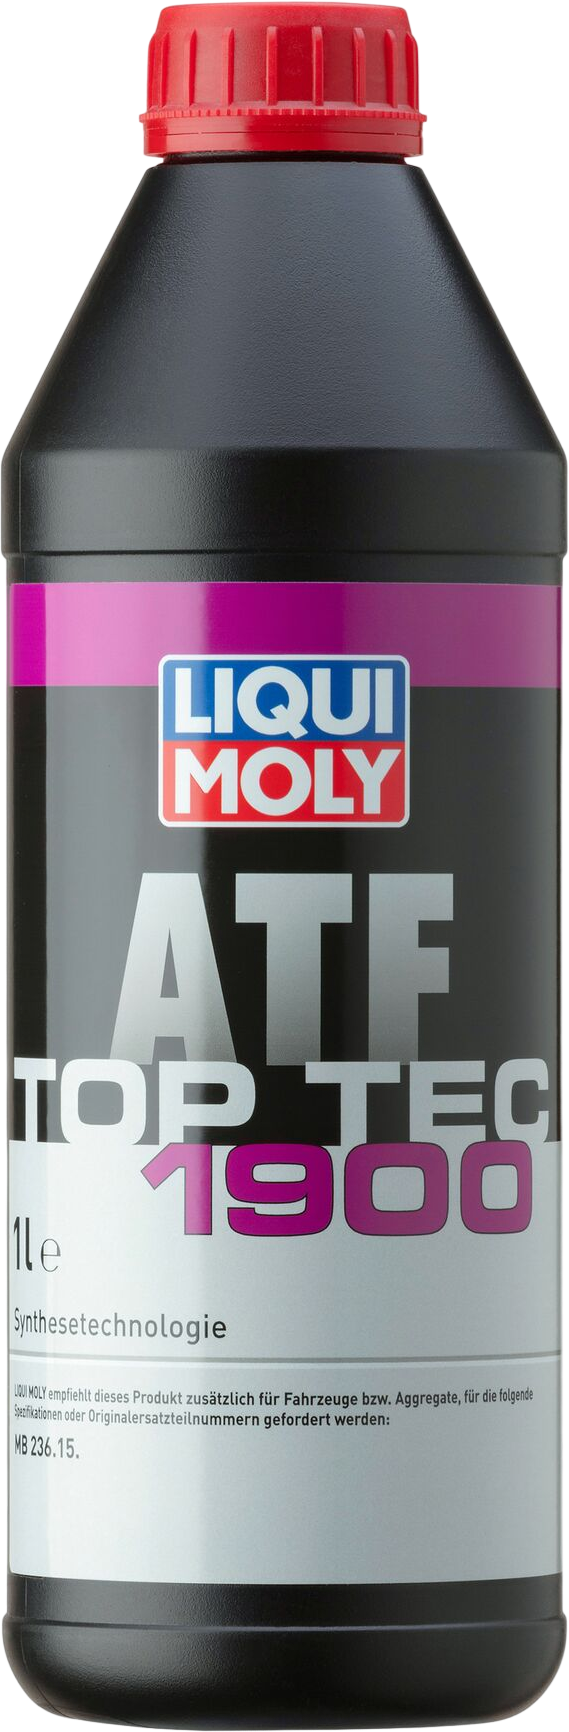 Liqui Moly Top Tec ATF 1900, 1 lt